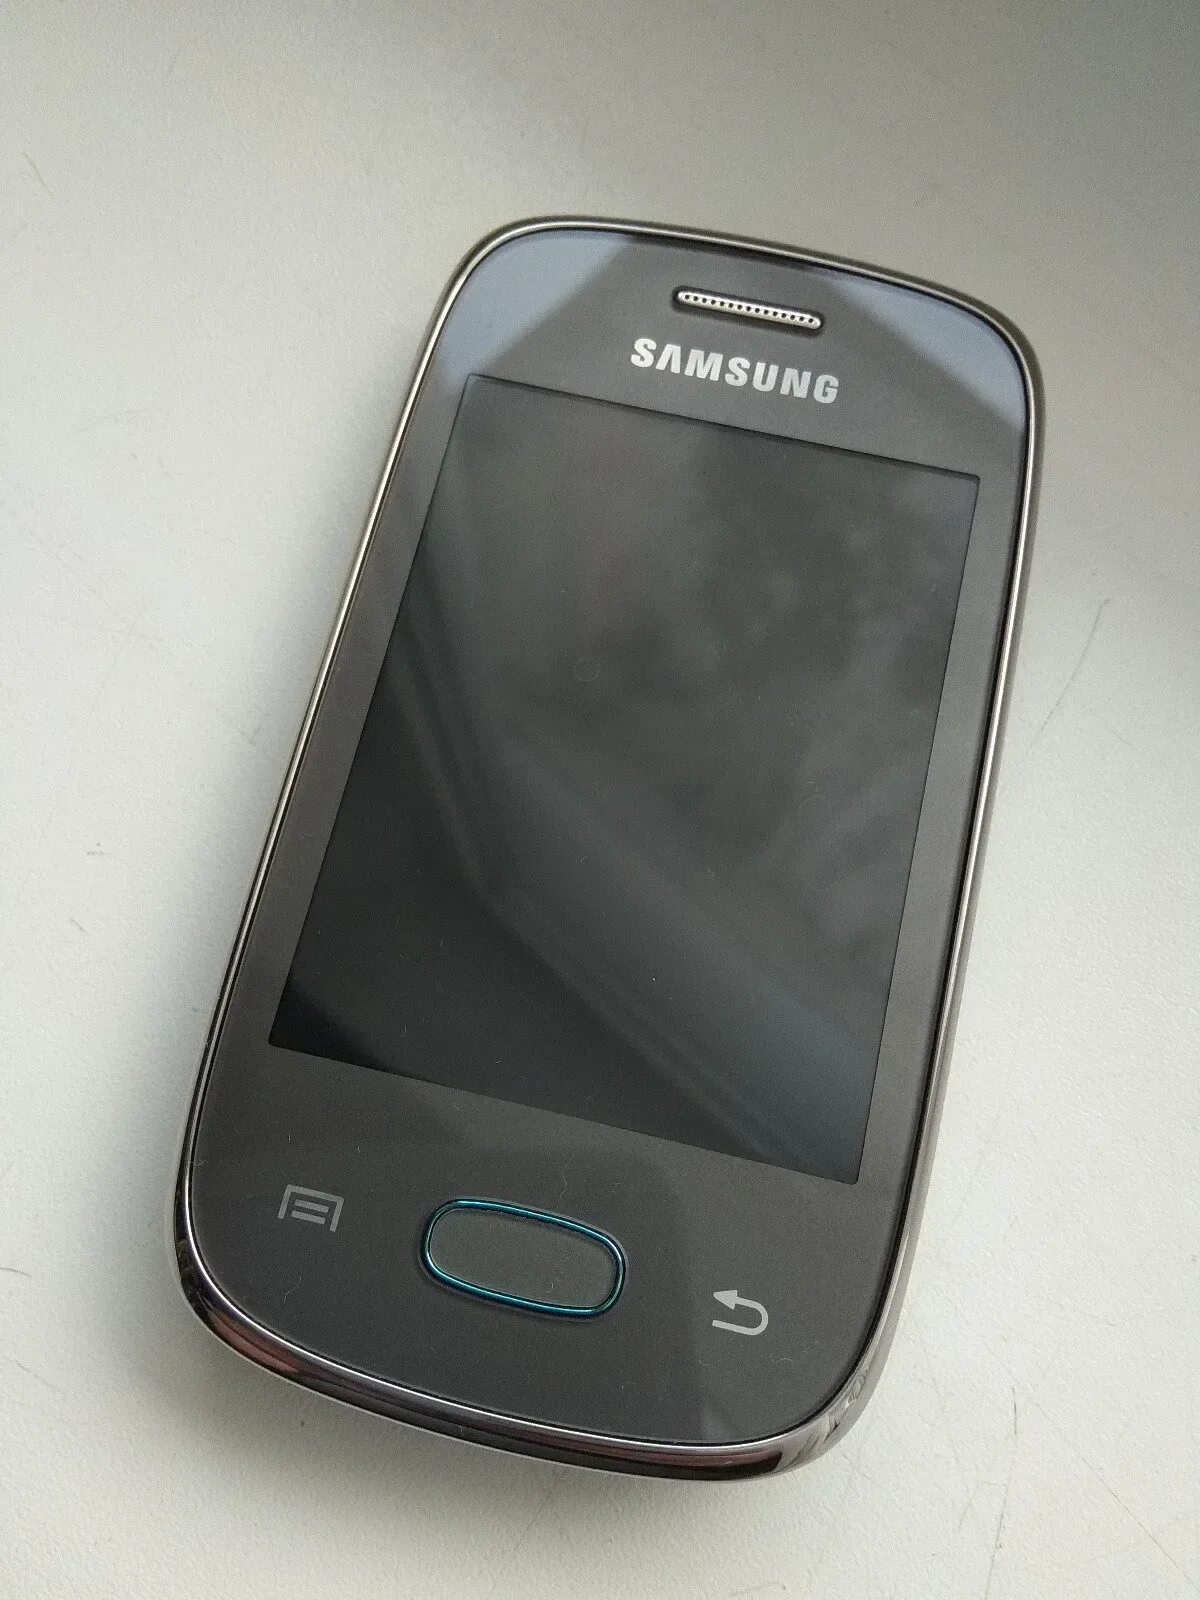 Телефоны самсунг рязань. Samsung Galaxy Pocket gt s5310. Samsung Galaxy Pocket Neo. Samsung Pocket Neo gt-s5310. Samsung Galaxy Pocket Neo s5310.